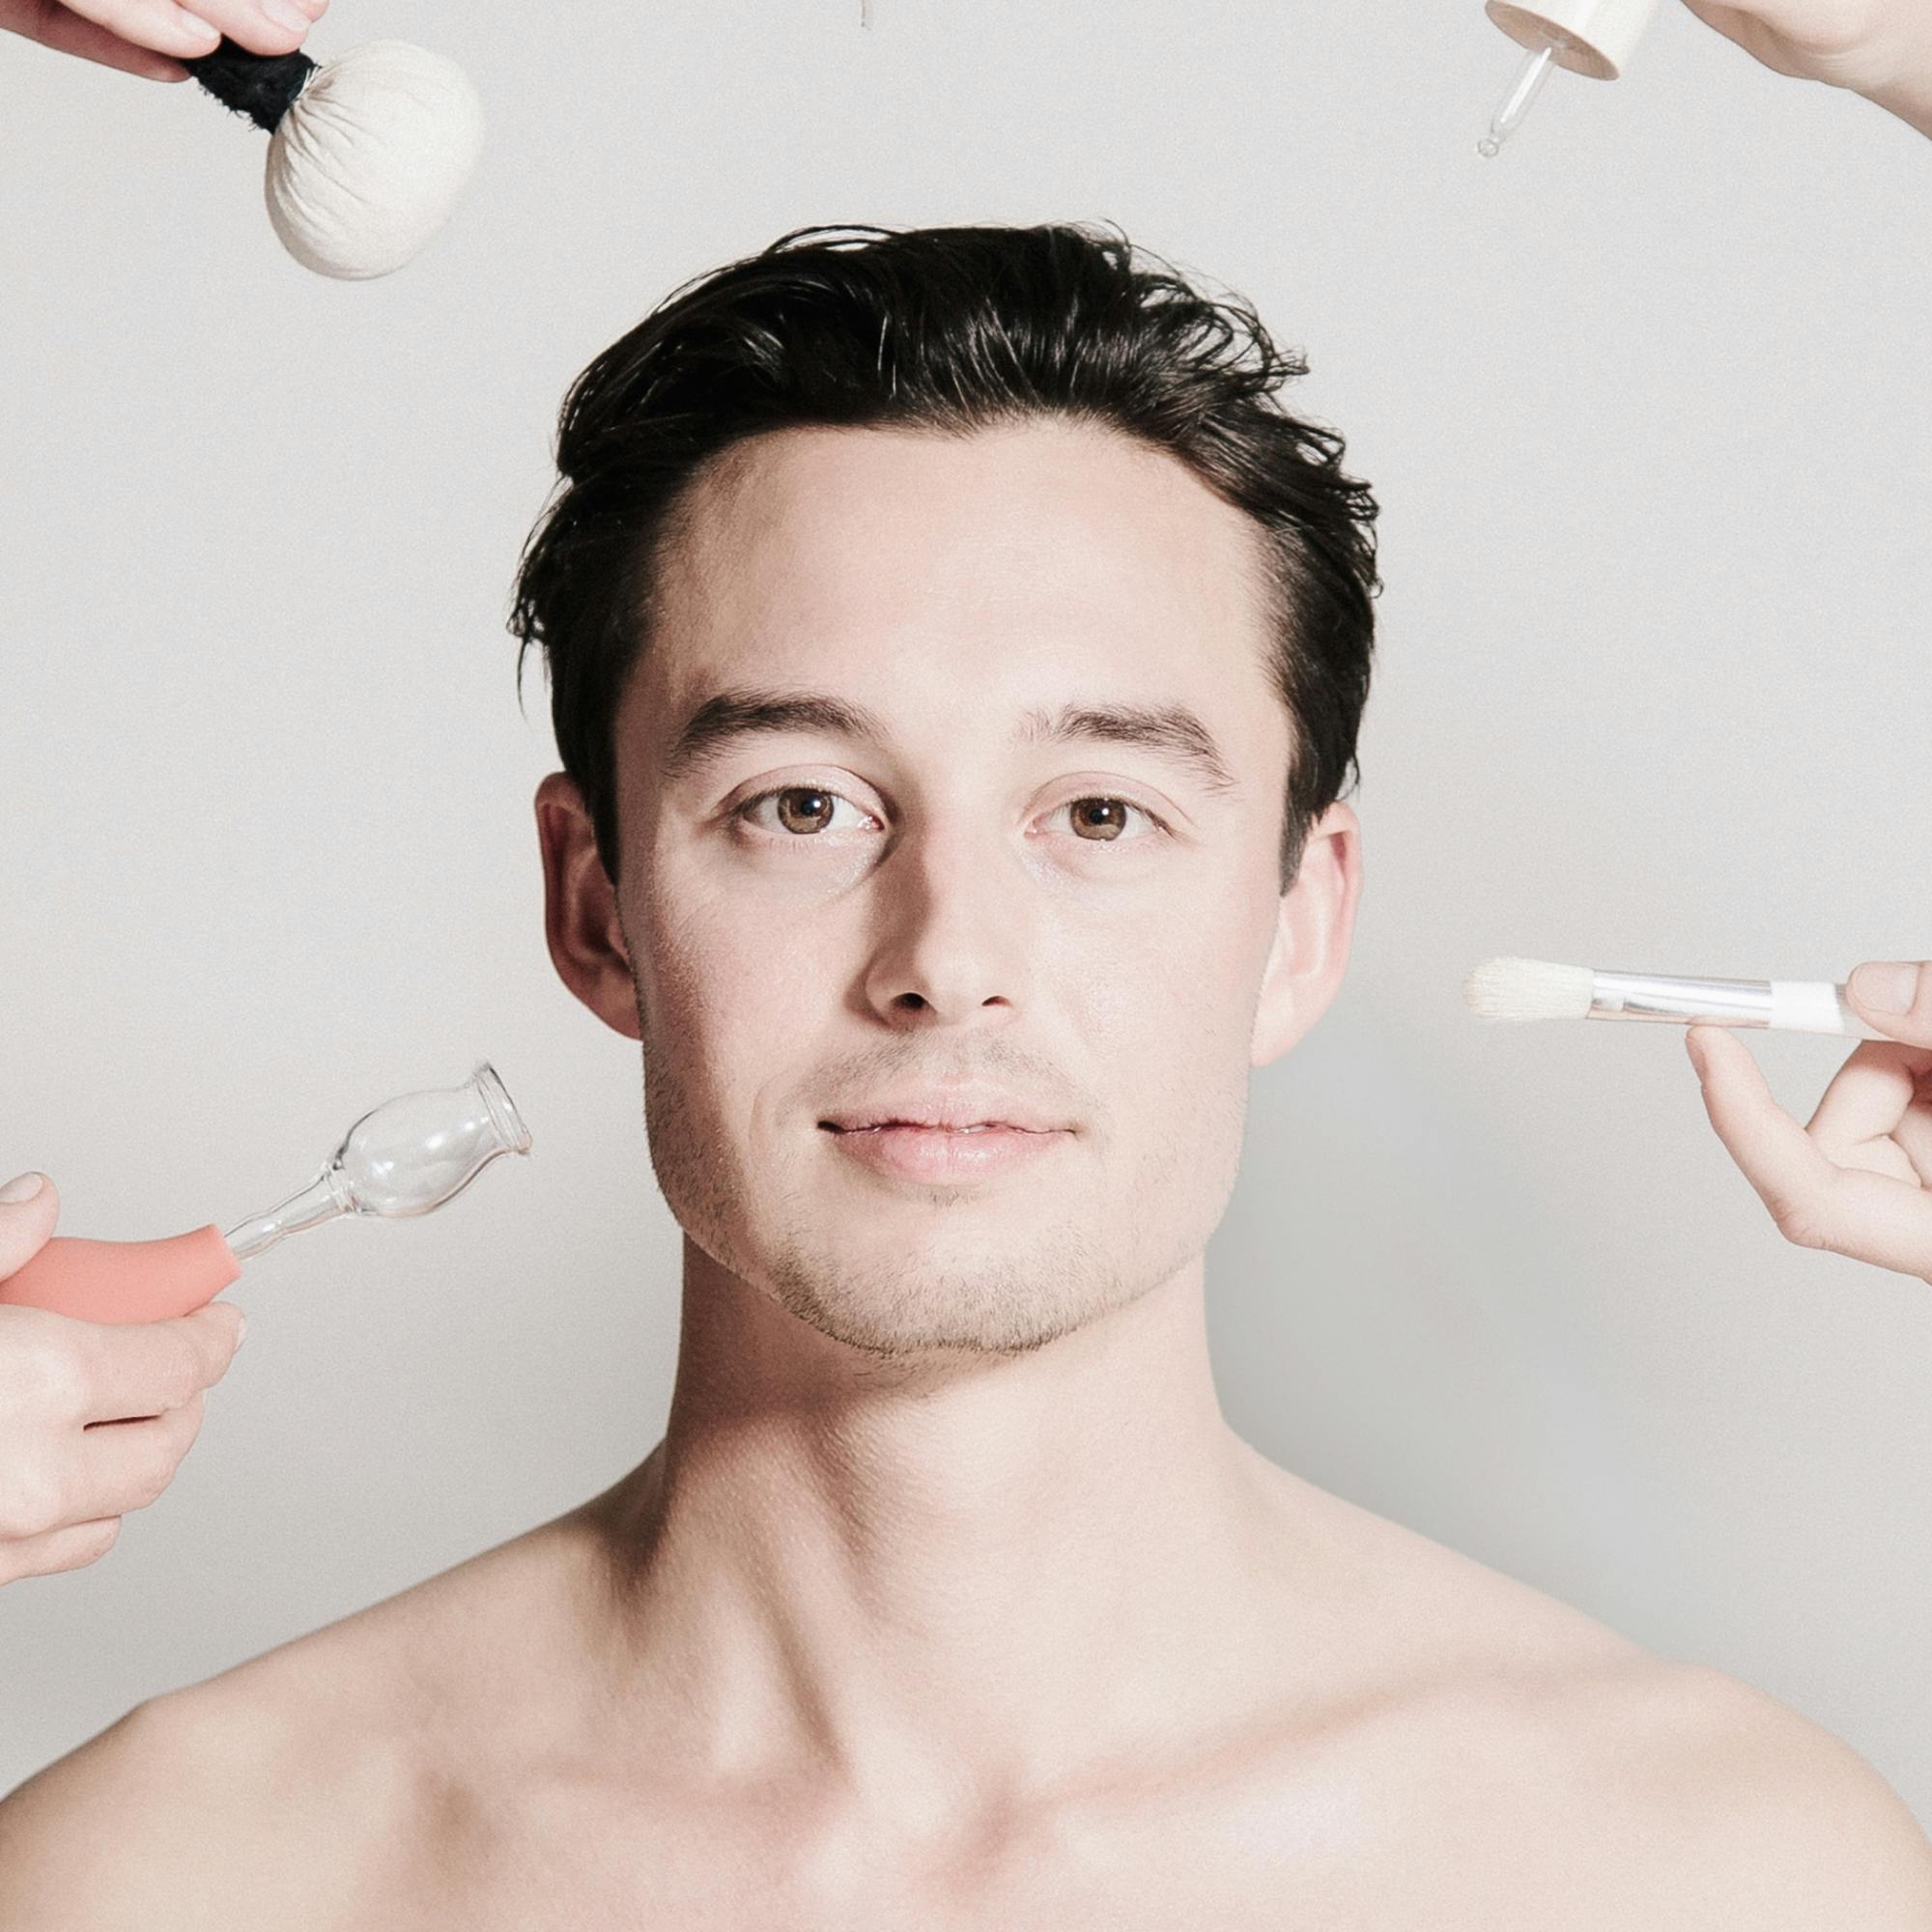 Portrait eines Mannes, rundherum halten Hände verschiedene Behandlungswerkzeuge ins Bild. © Team Dr Joseph